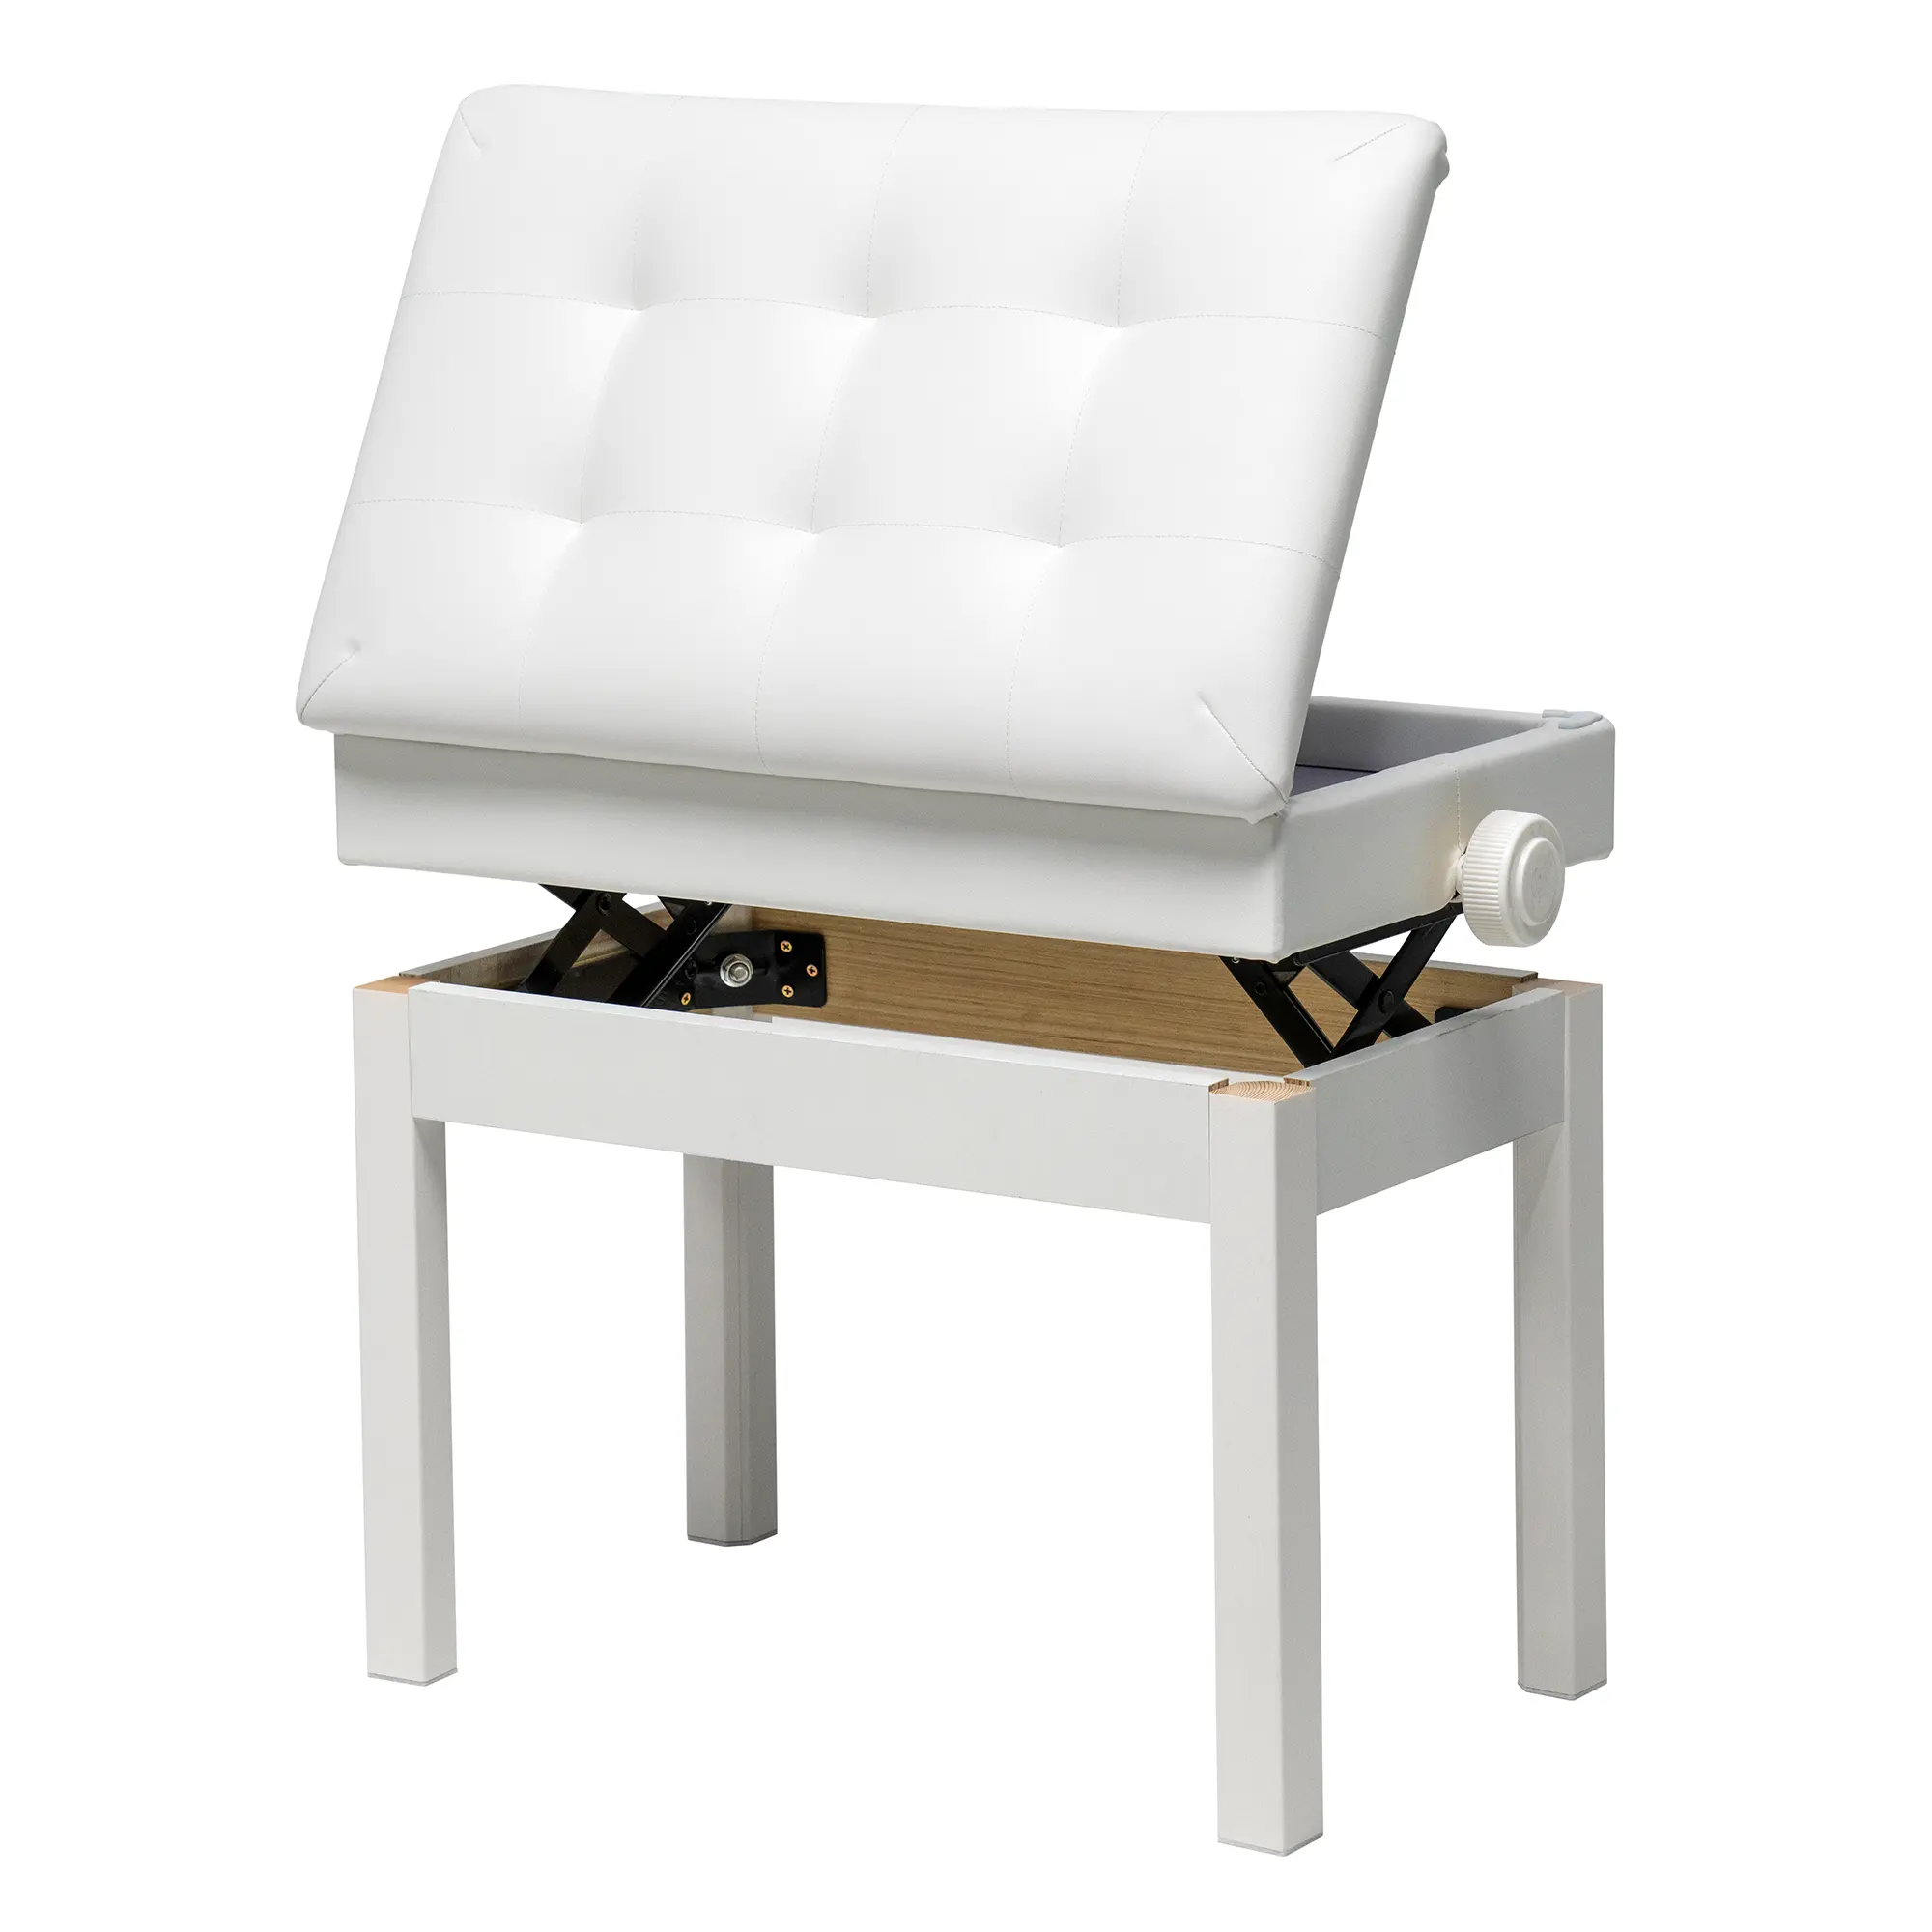 KB-03, оптовая продажа, профессиональный Деревянный Музыкальный Стул, белая скамейка для пианино, для музыкального инструмента